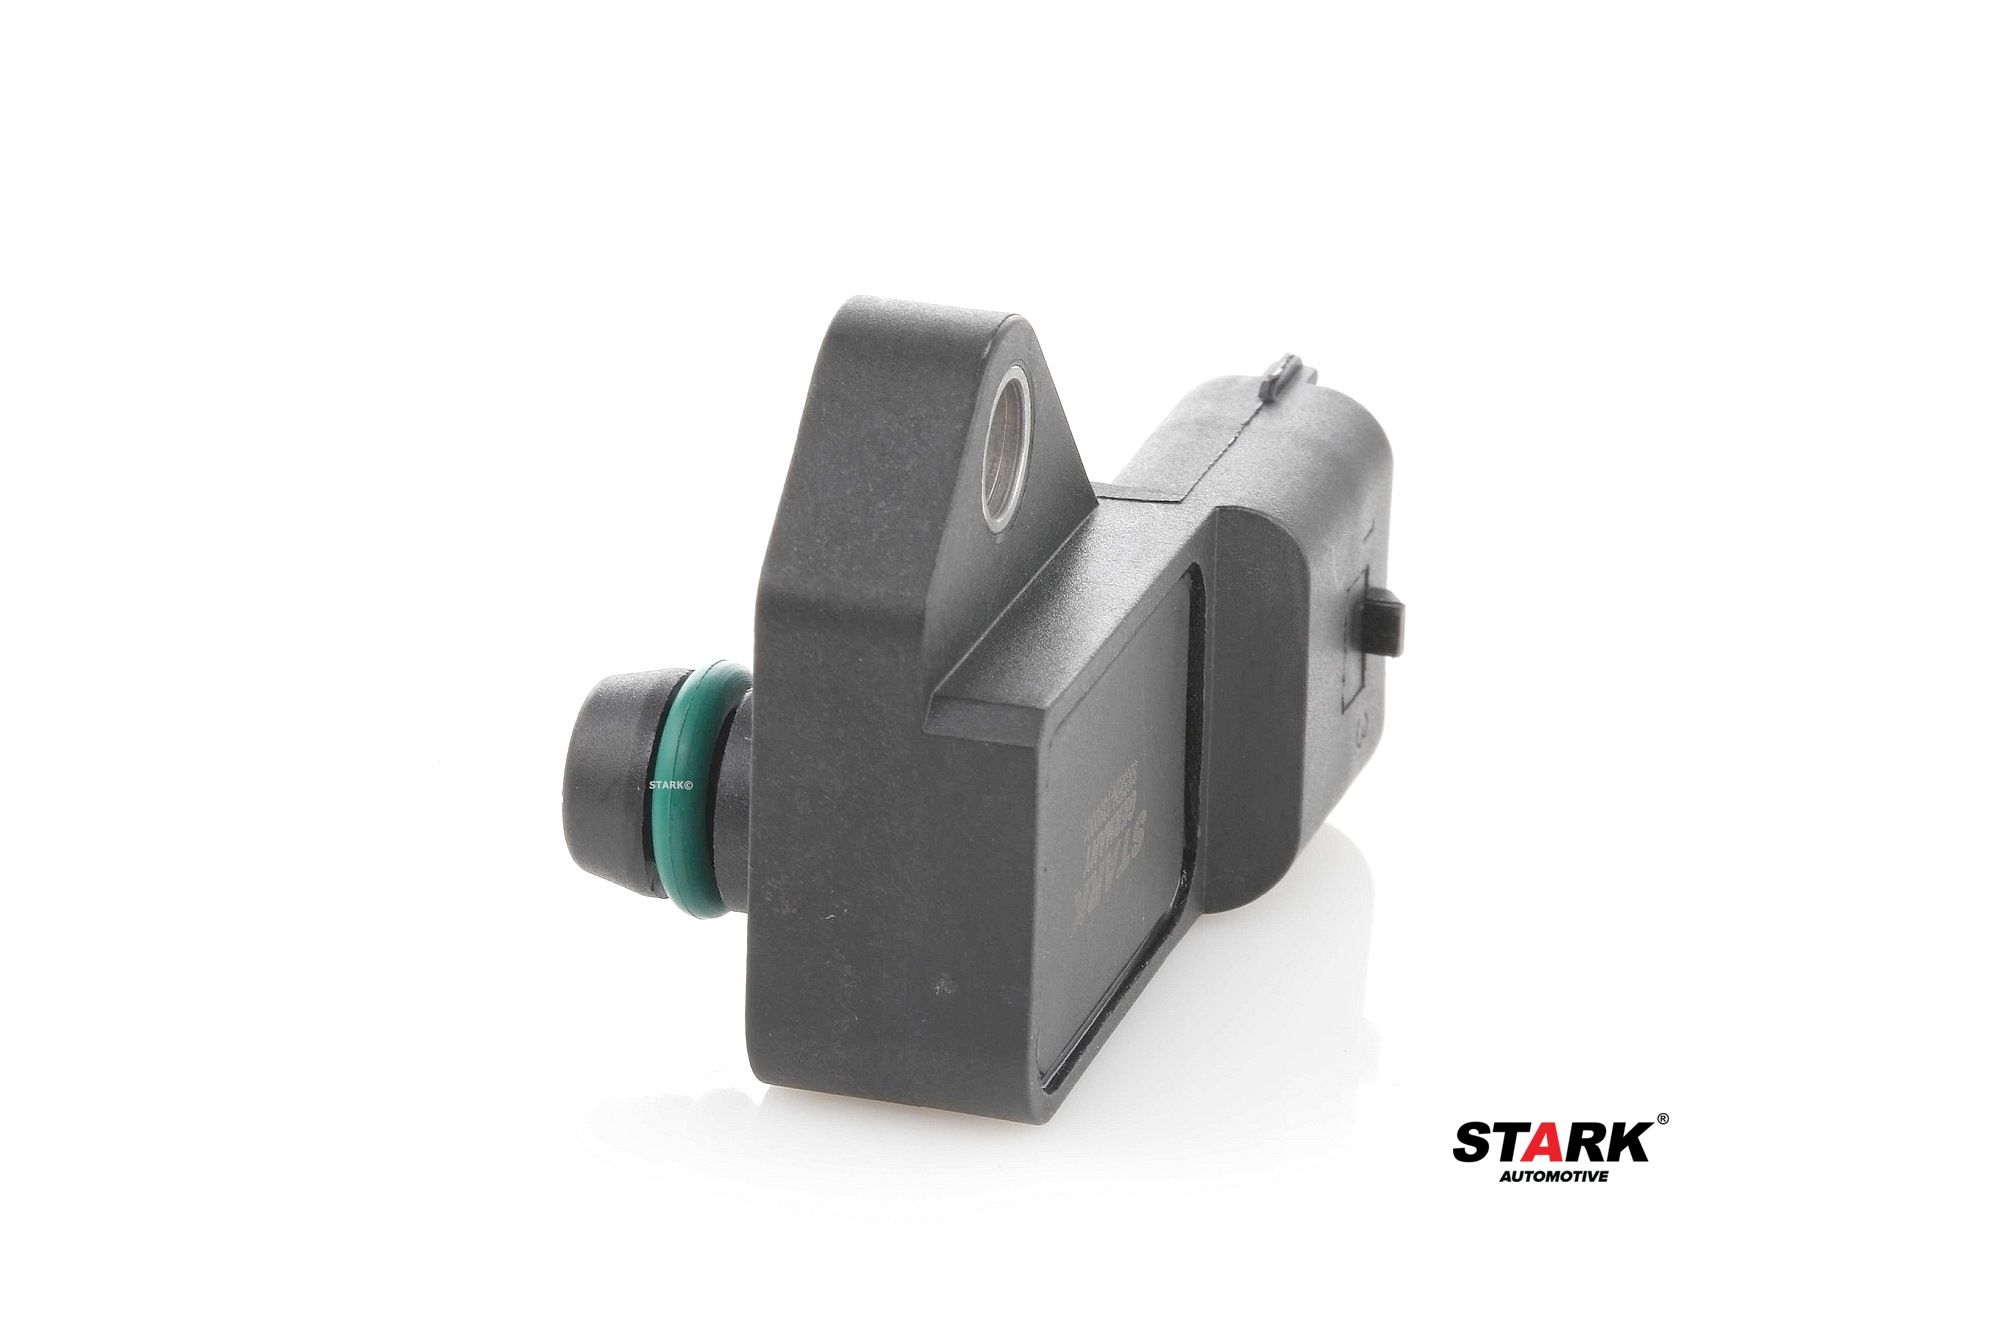 STARK SKSI-0840020 Intake manifold pressure sensor 37830PLZD00